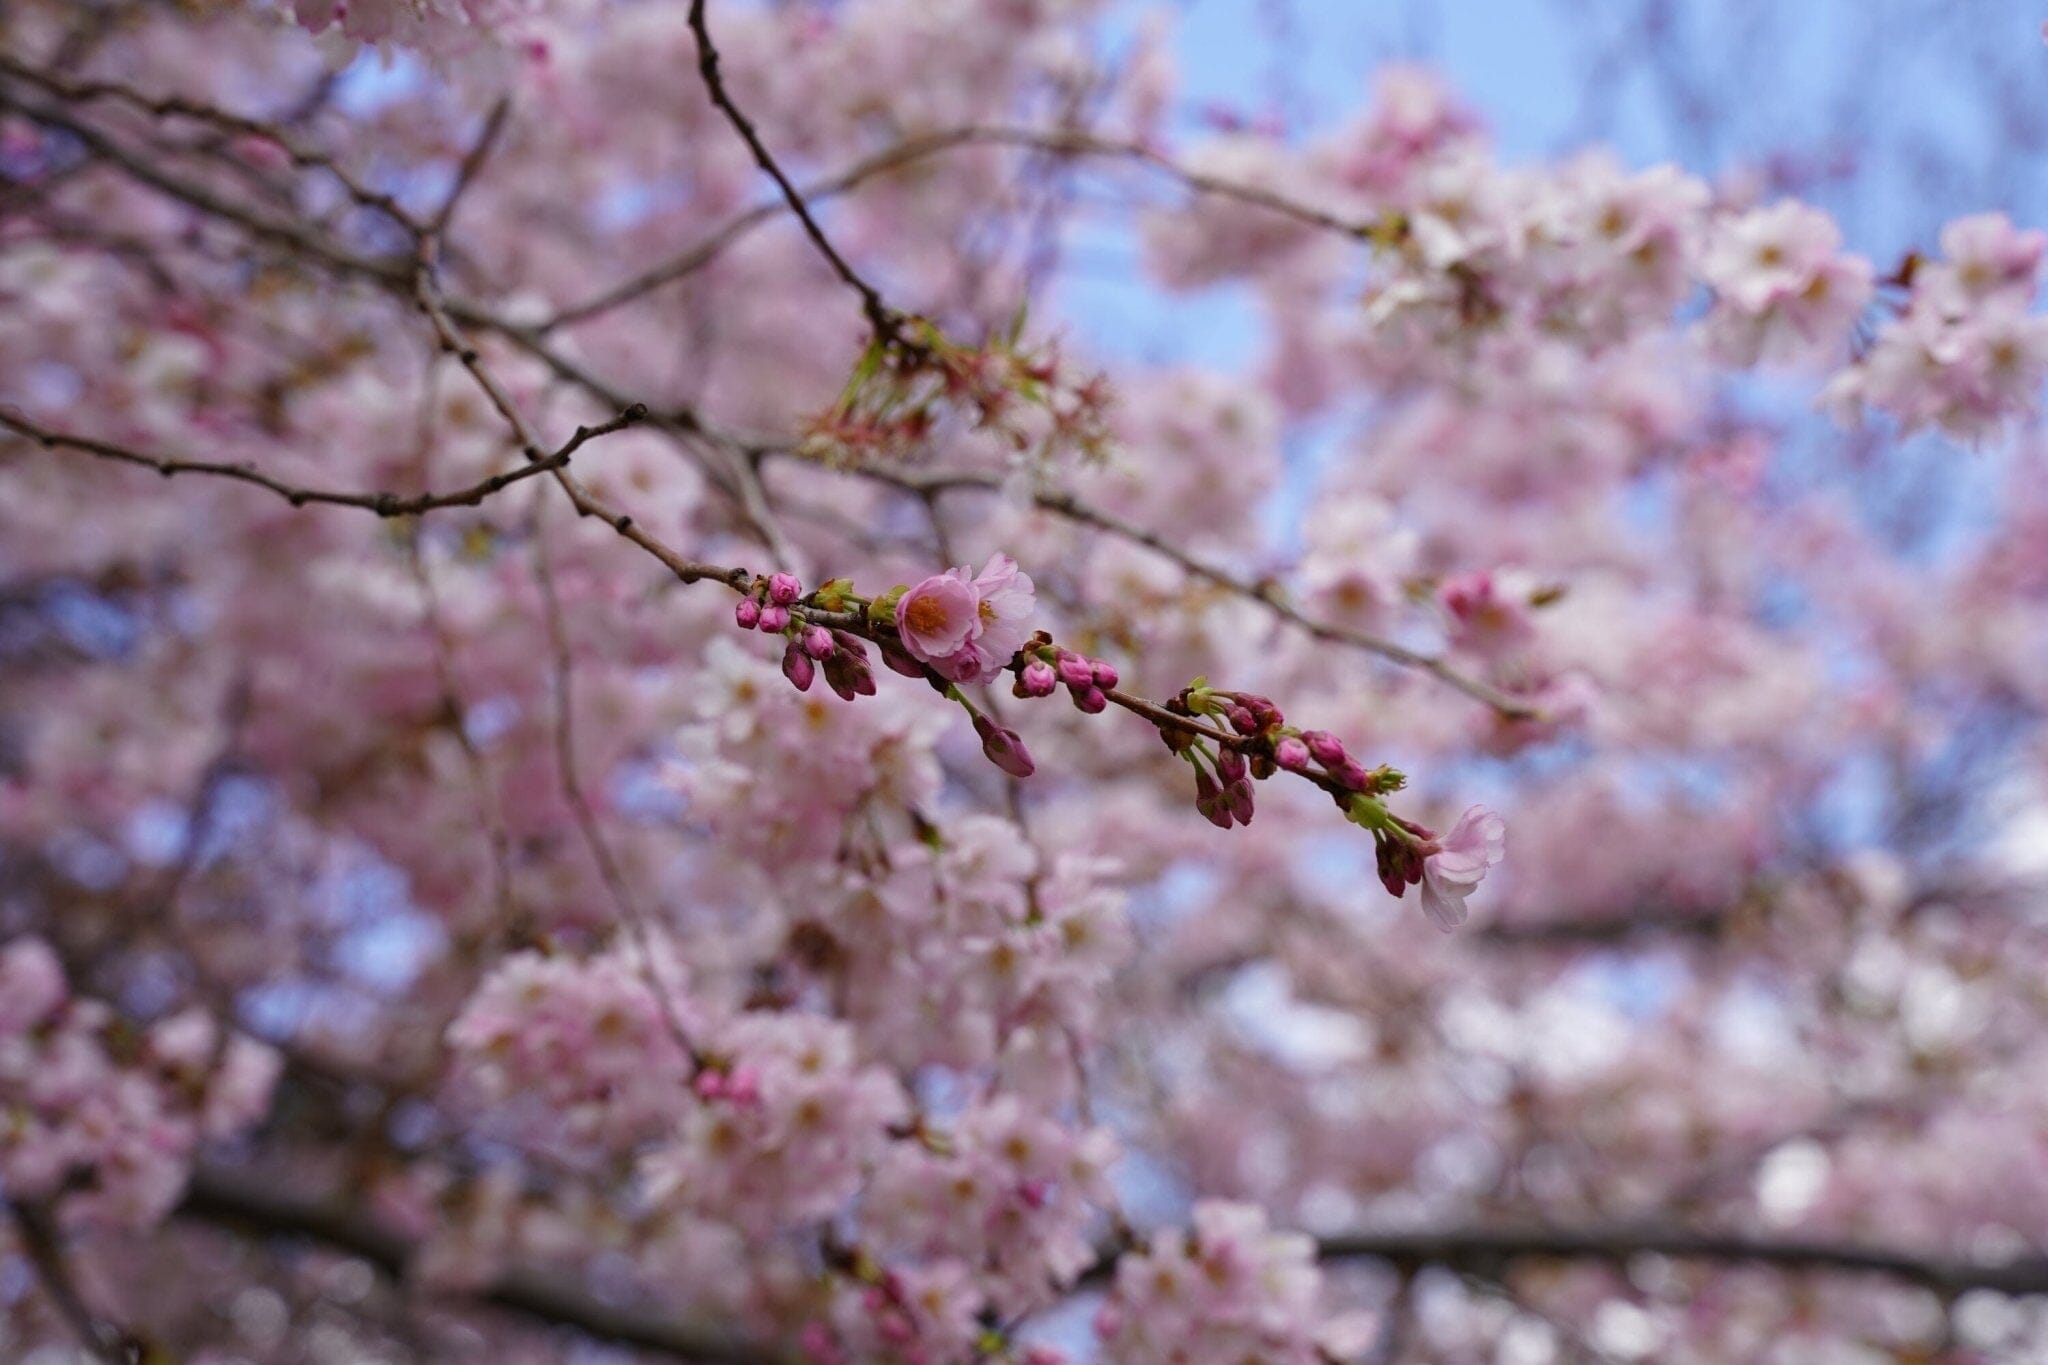 Les bienfaits de la fleur de cerisier - Therapie Familiale